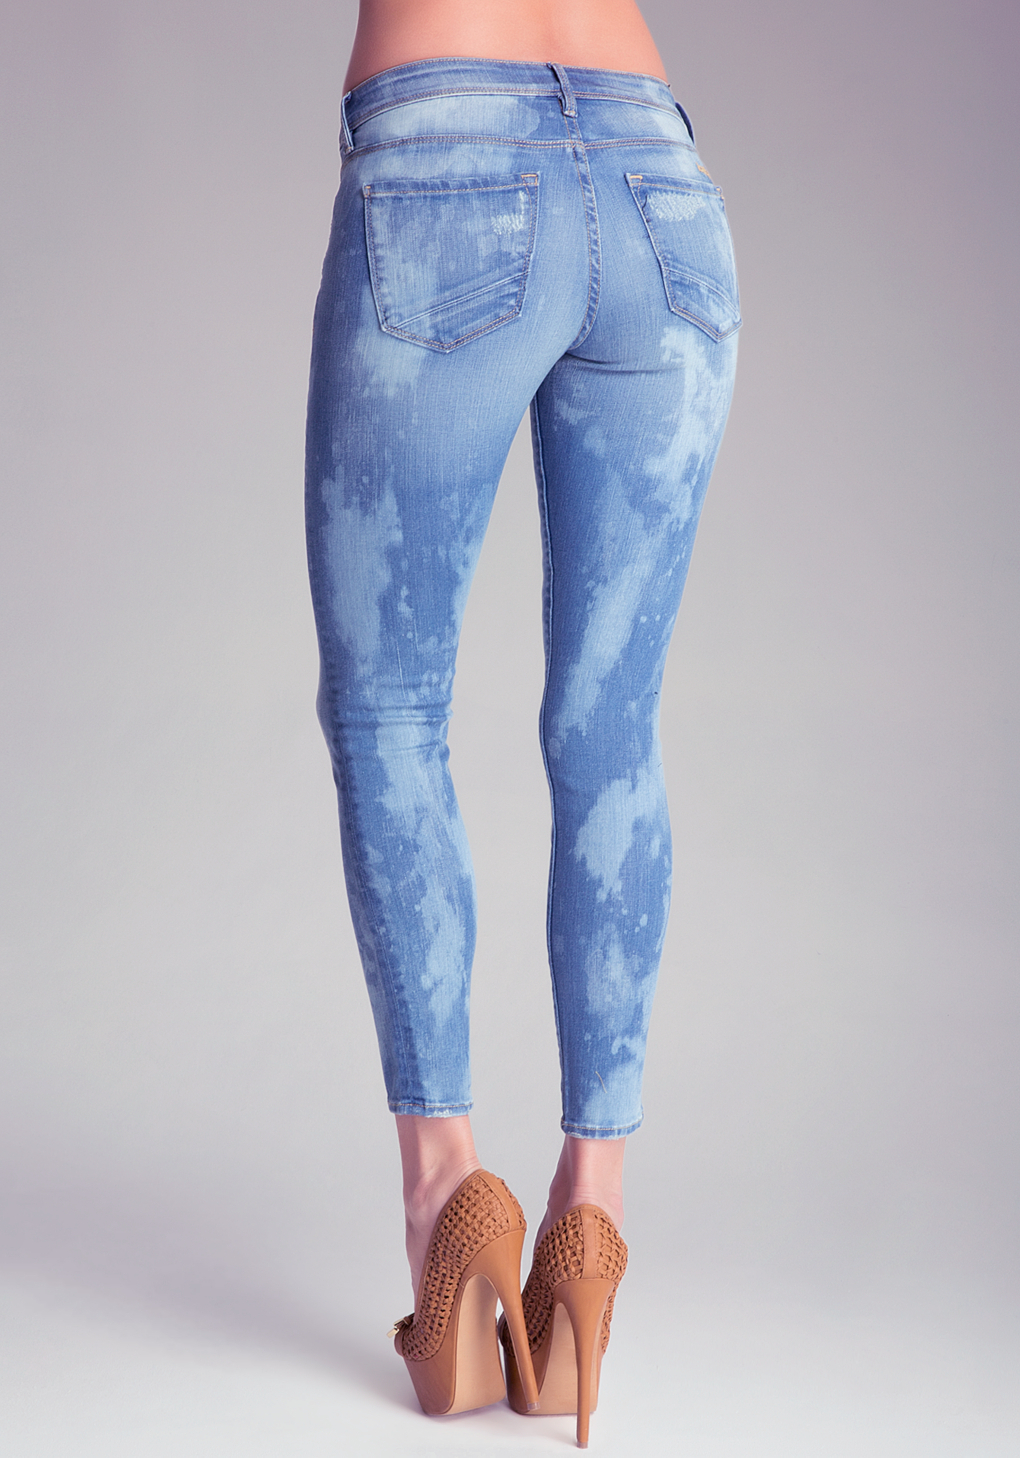 Lyst - Bebe Paint Splatter Skinny Jeans in Blue